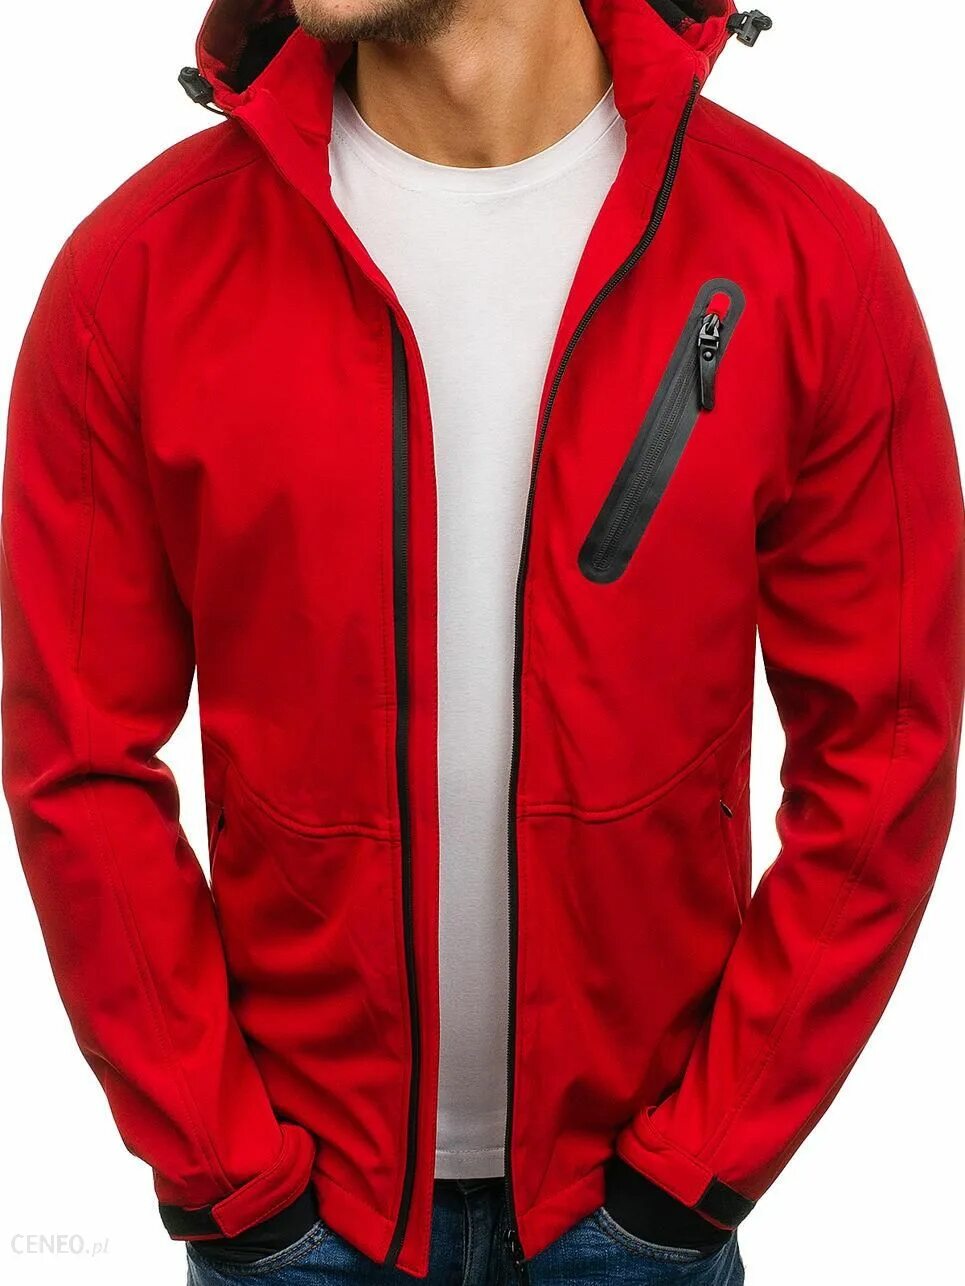 Спортивная осенняя мужская. Куртка Bolf красная. Куртка софтшелл мужская красная Madshus. Куртка мужская демисезонная красная. Спортивные куртки мужские осенние.